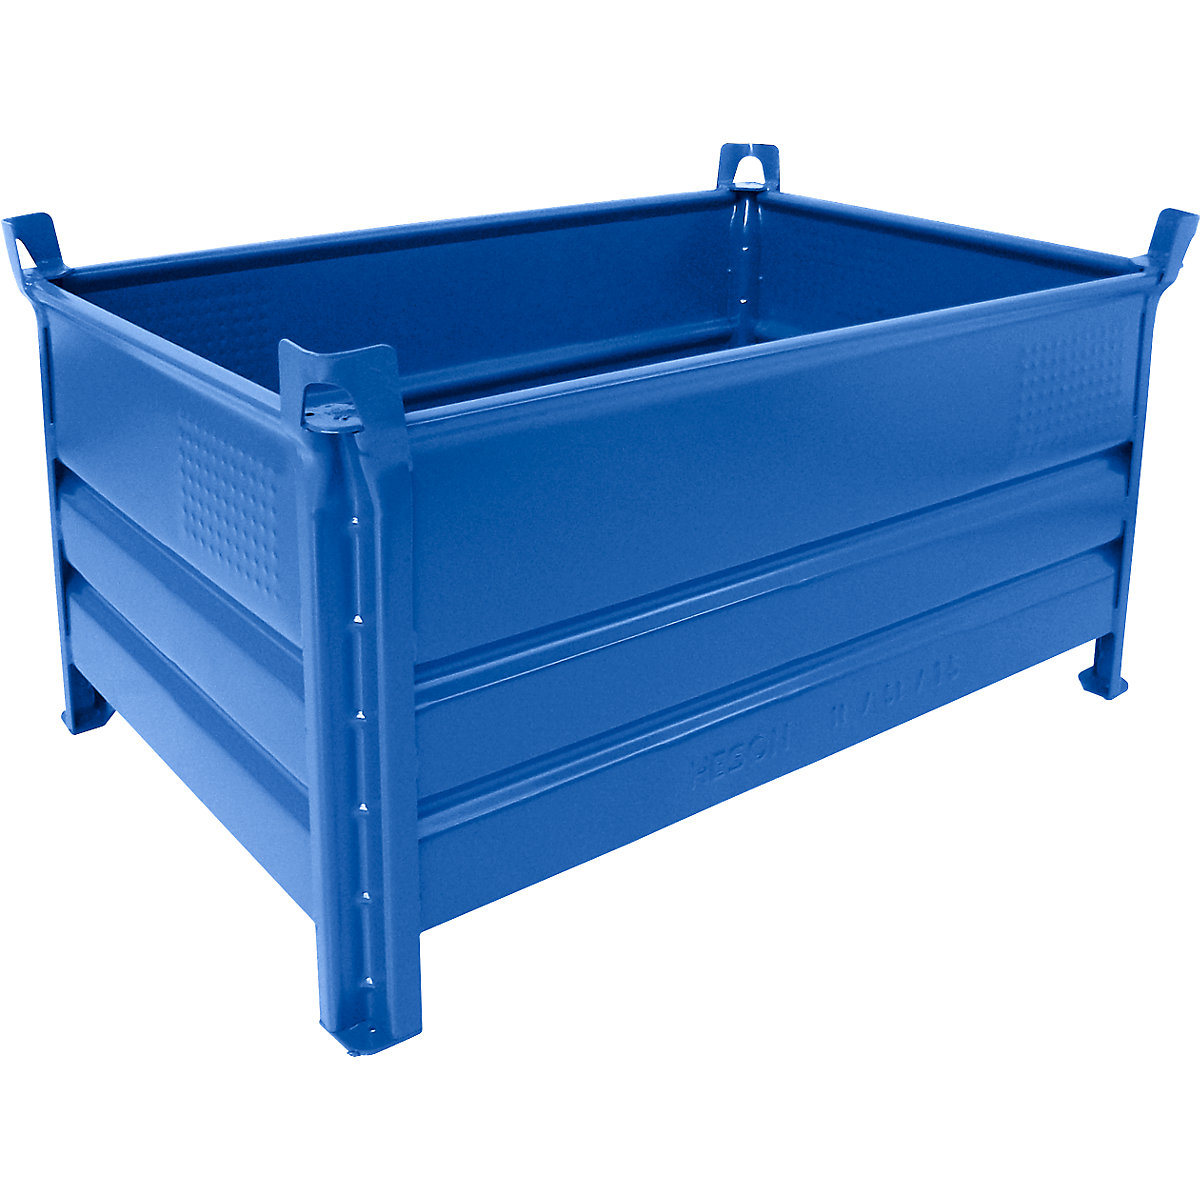 Teli falú rakásolható tároló – Heson, szé x h 800 x 1200 mm, teherbírás 500 kg, kék, 1 db-tól-6